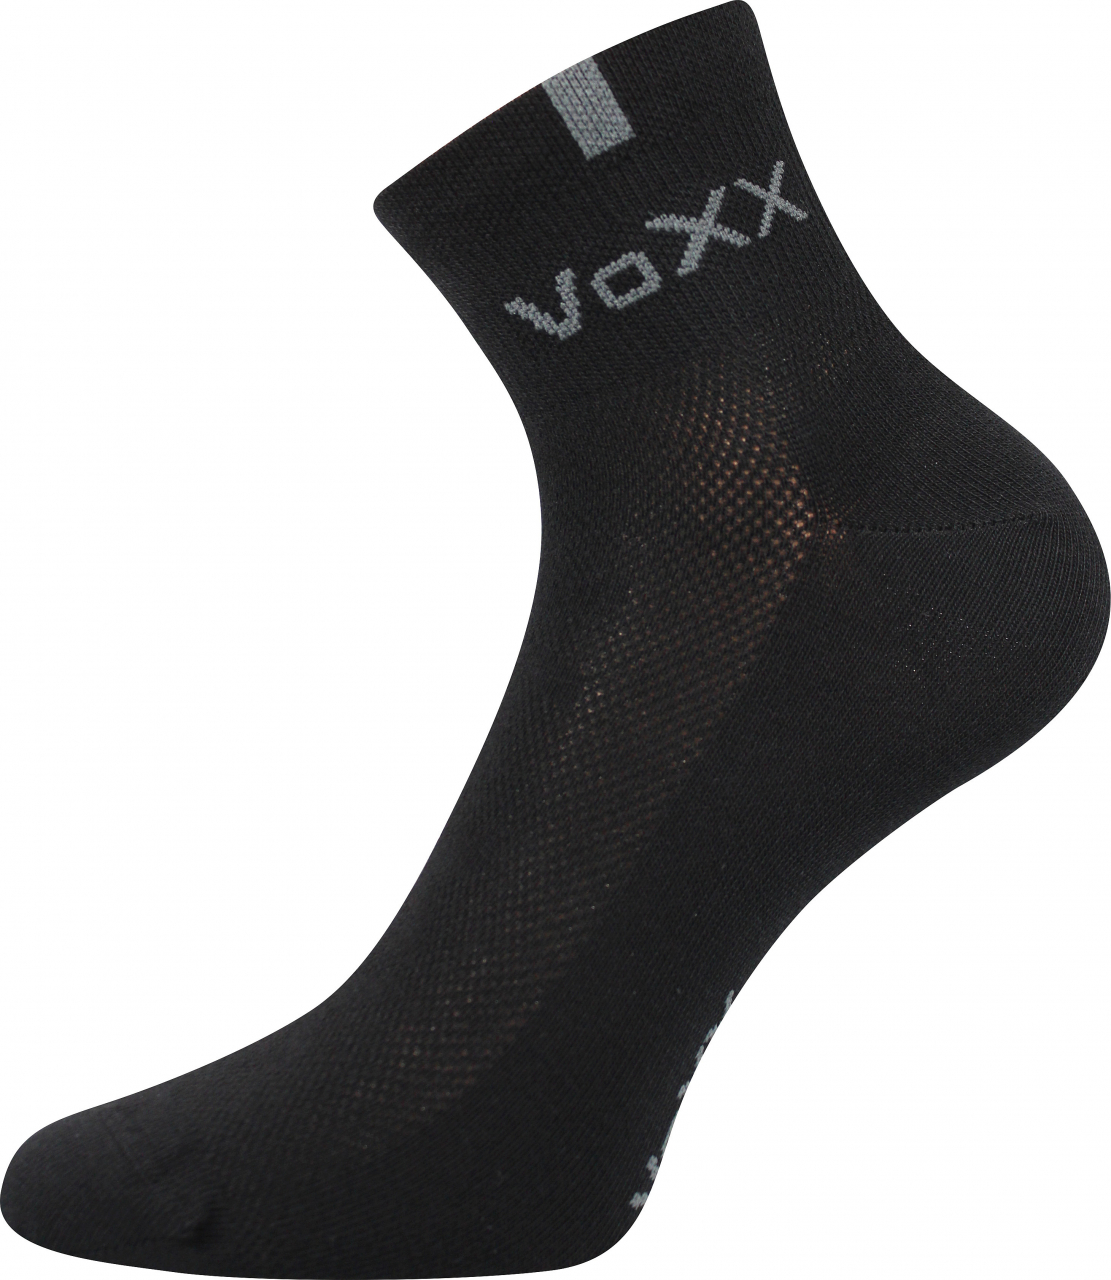 Ponožky s elastanem Voxx Fredy - černé, 43-46